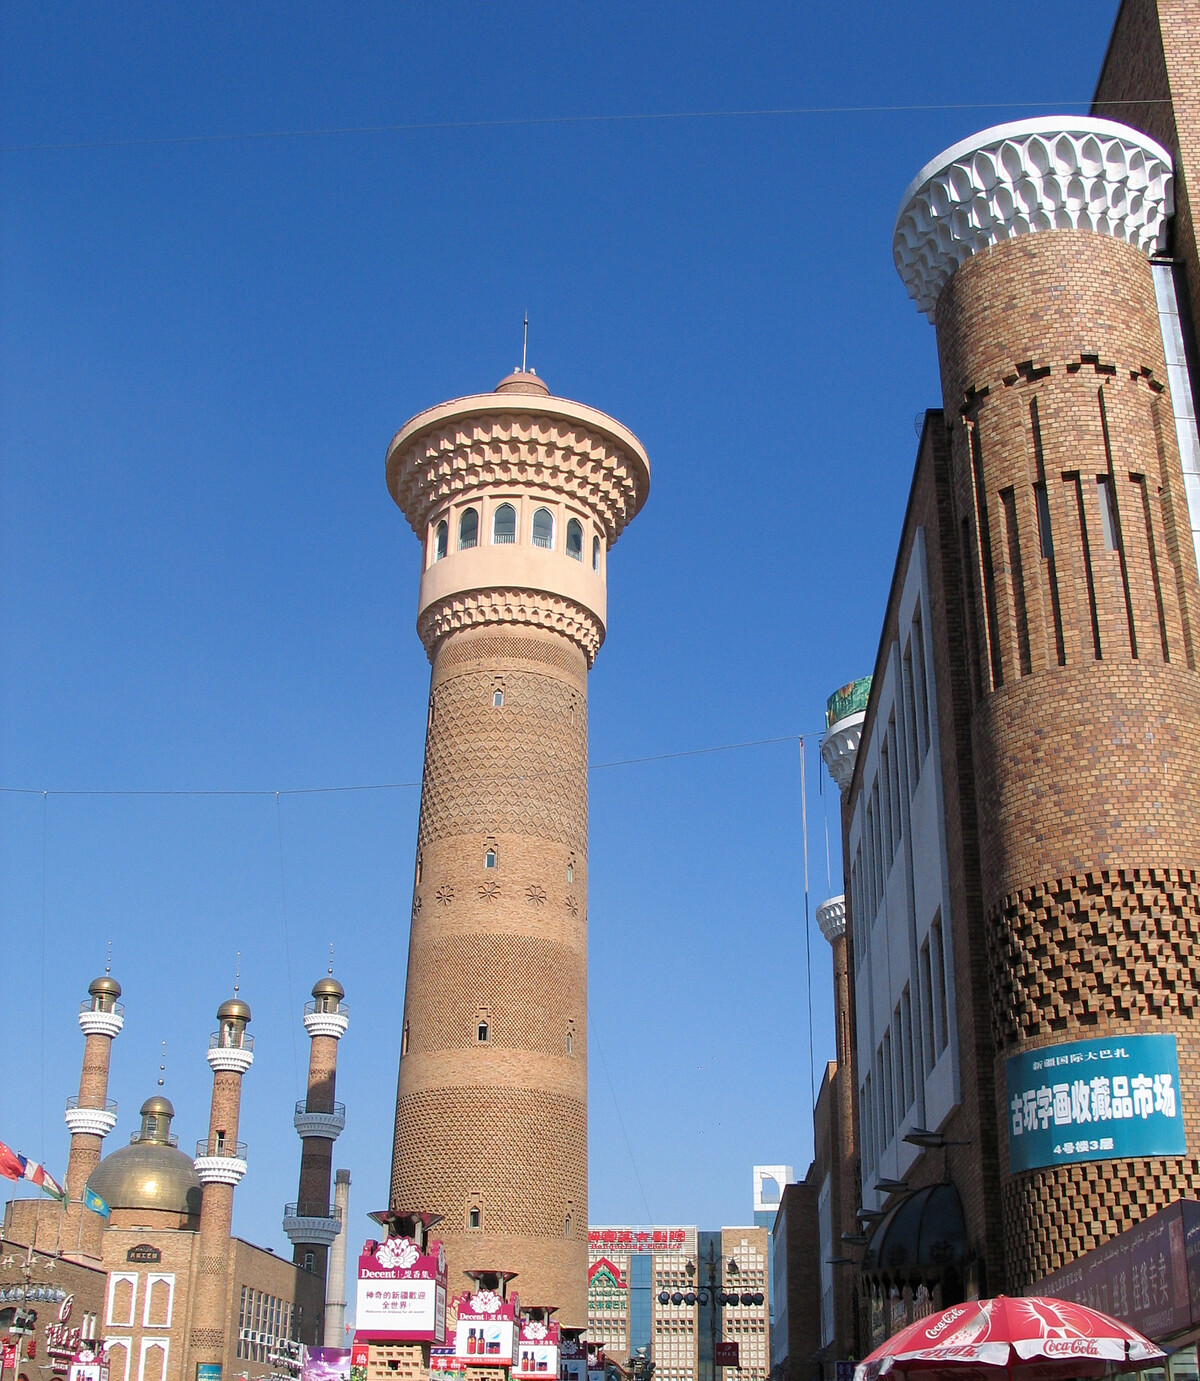 Minarets of the Urumqi Grand Bazaar